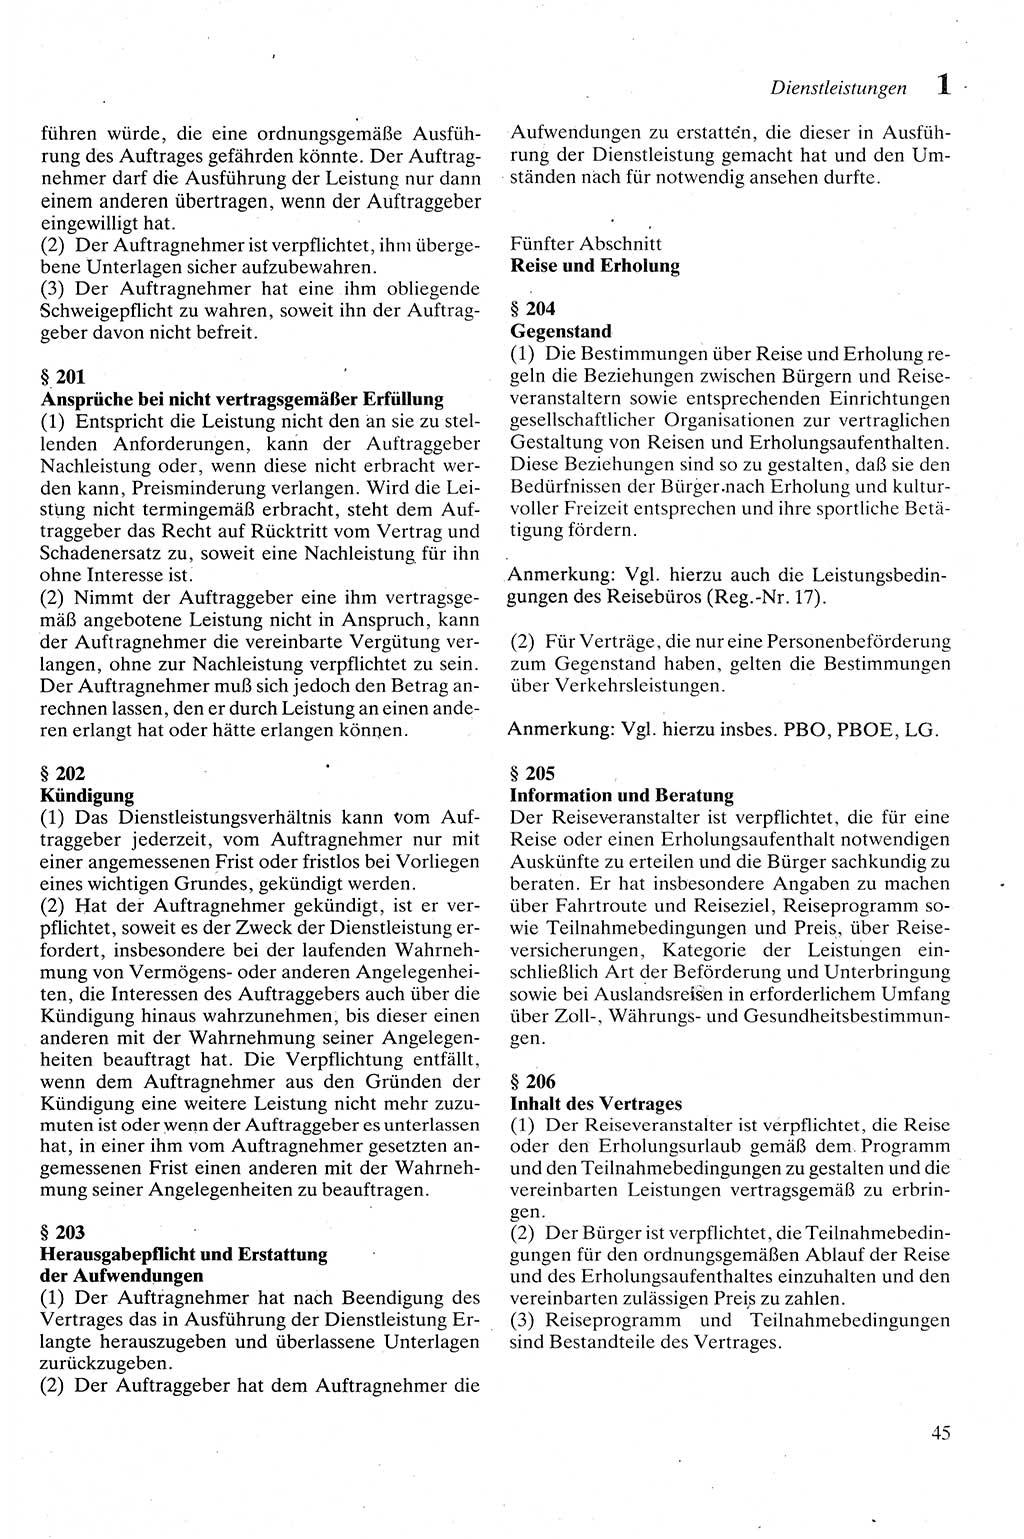 Zivilgesetzbuch (ZVG) sowie angrenzende Gesetze und Bestimmungen [Deutsche Demokratische Republik (DDR)] 1975, Seite 45 (ZGB Ges. Best. DDR 1975, S. 45)